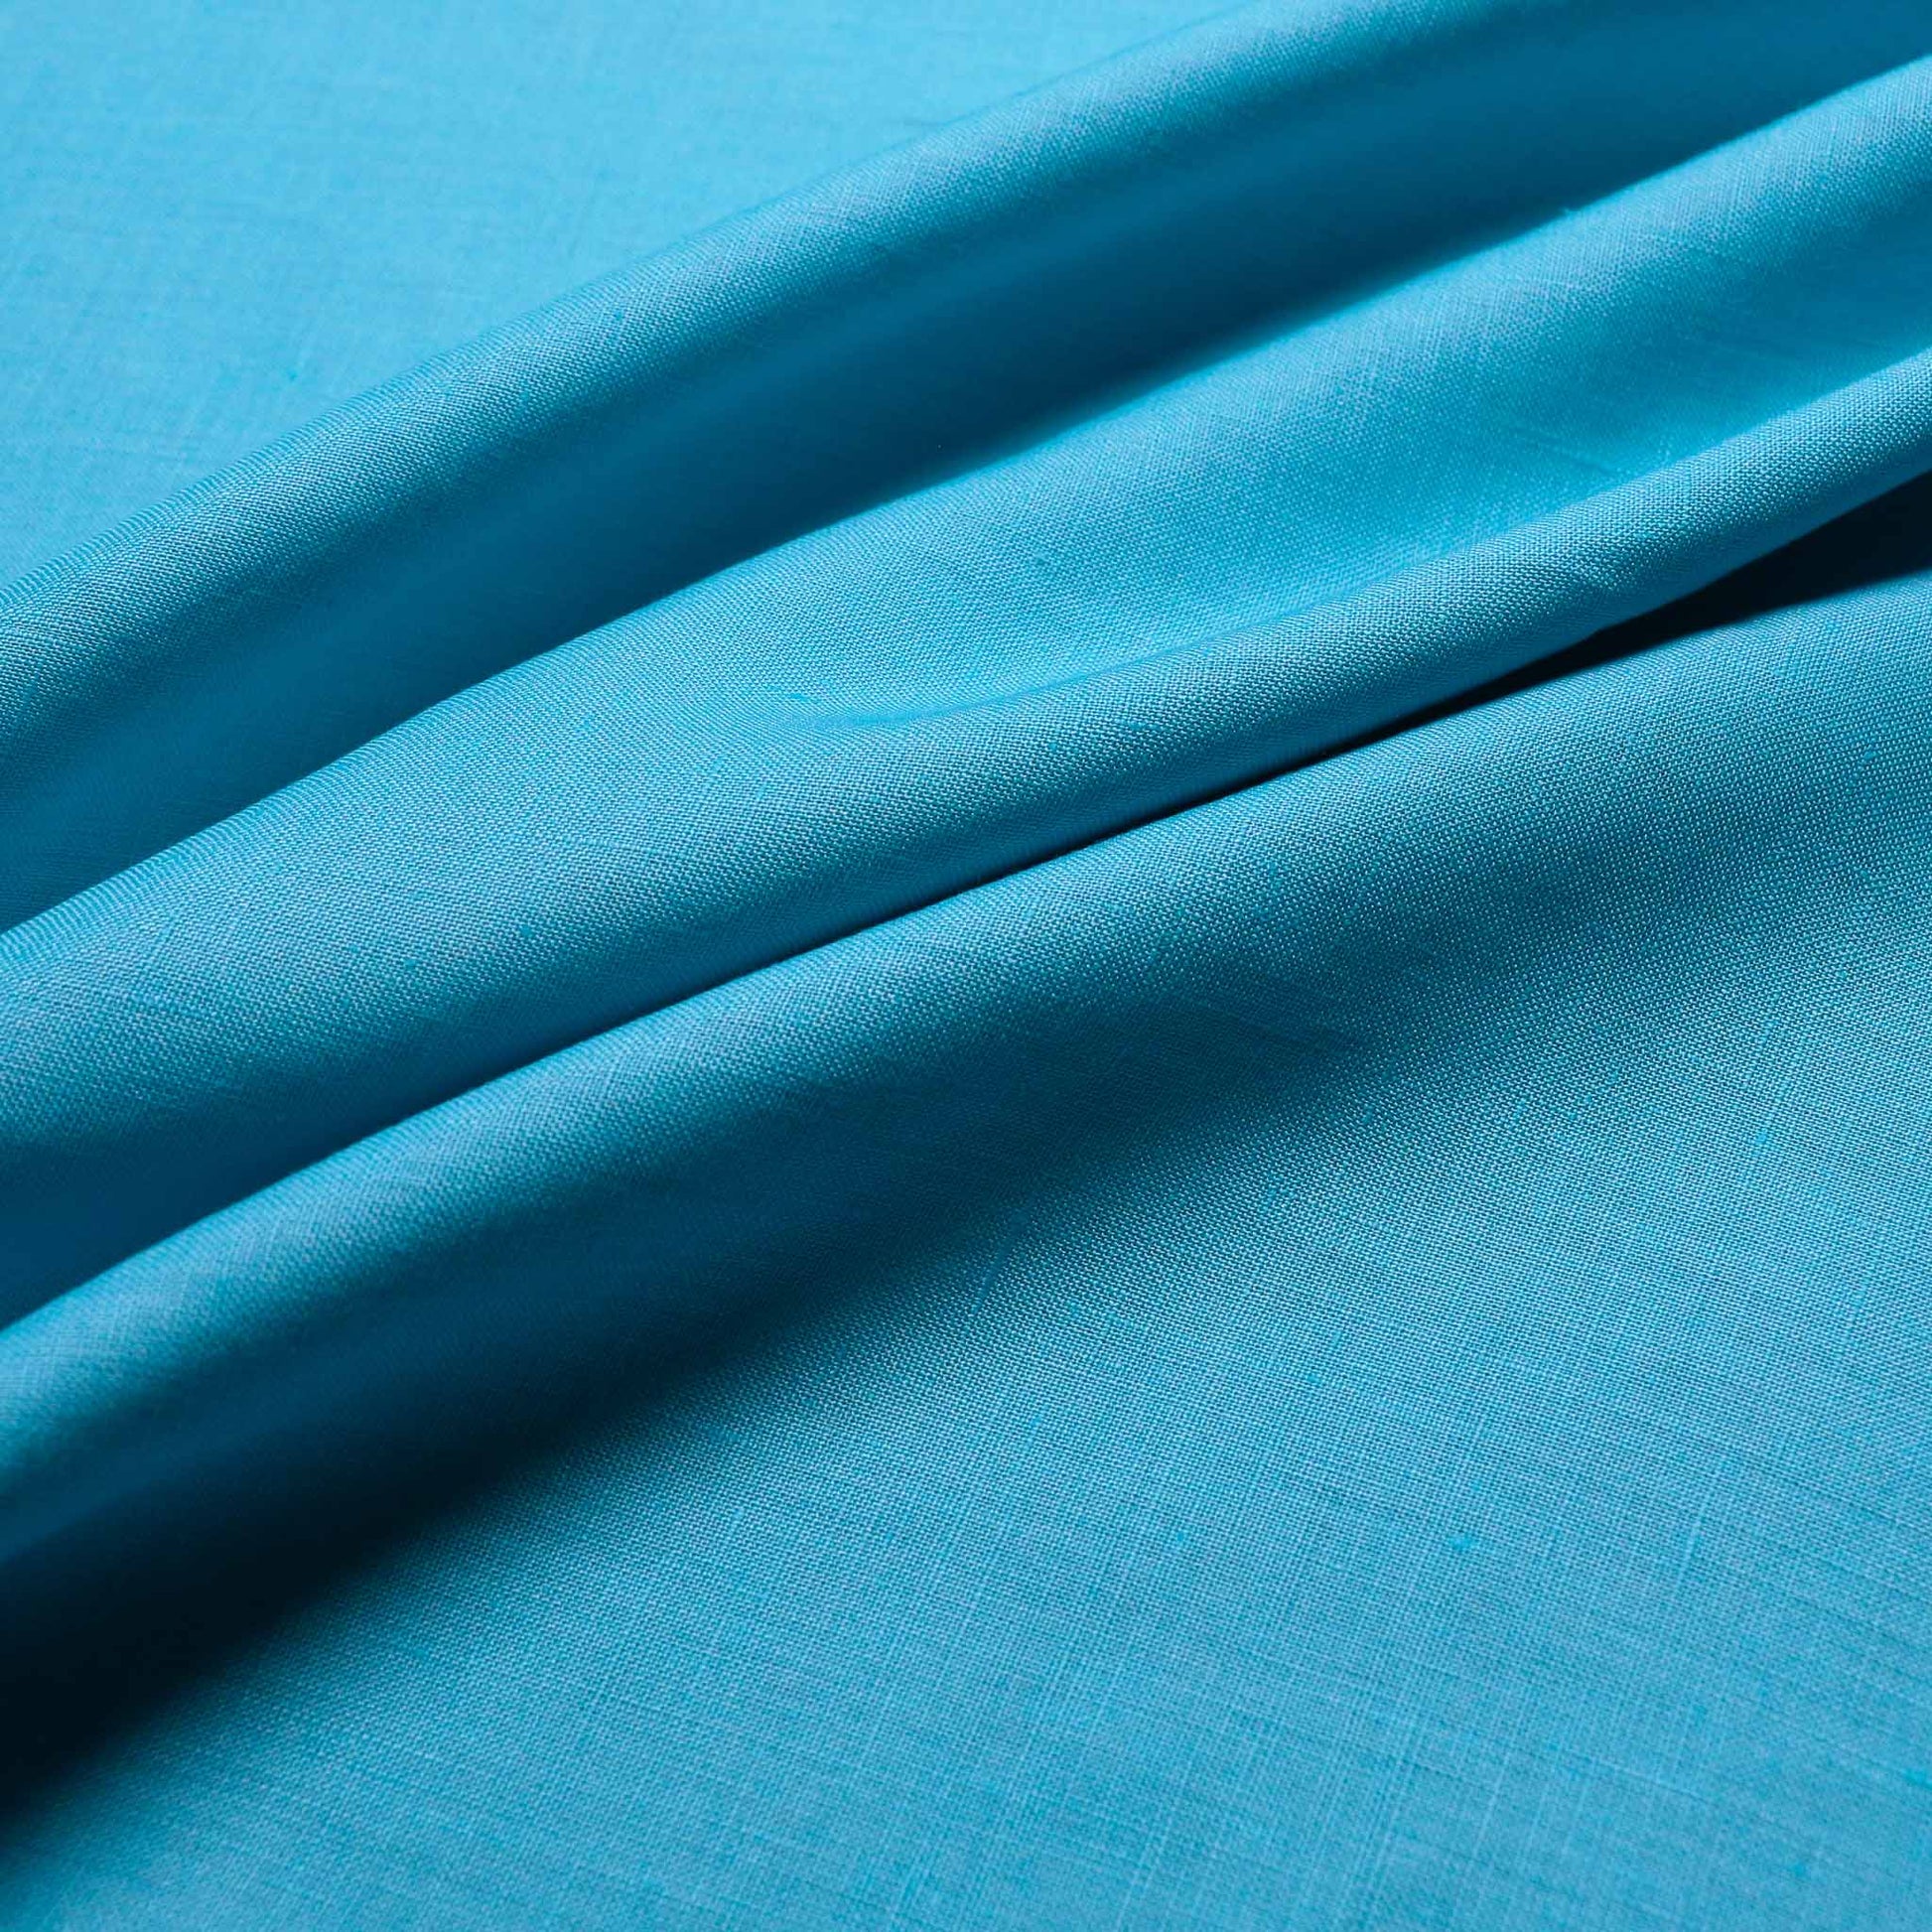 plain pastel teal linen cotton dressmaking fabric